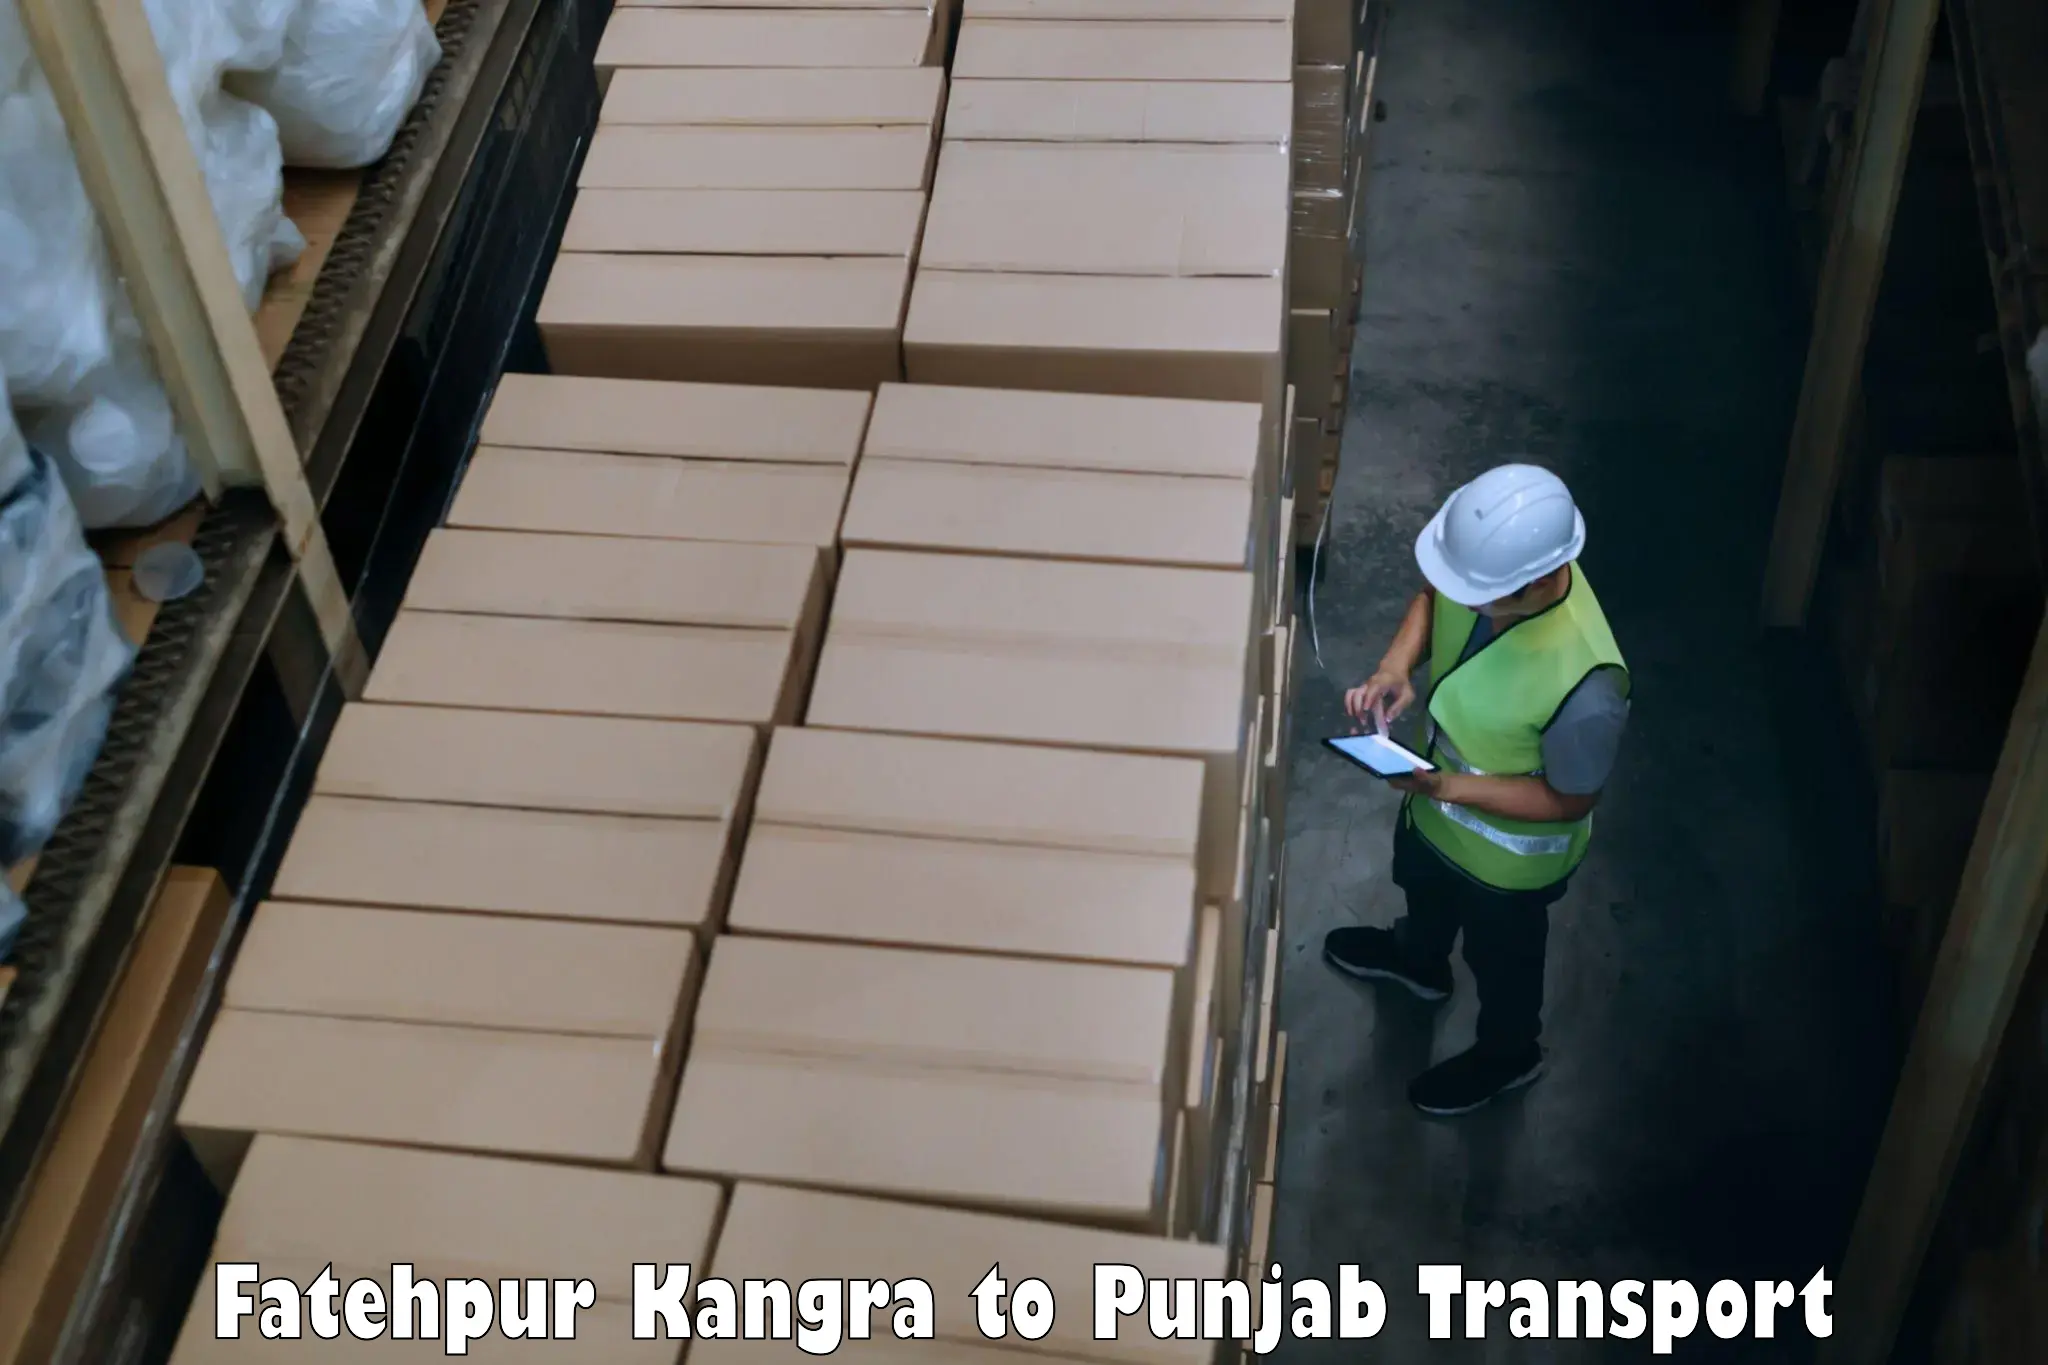 Commercial transport service Fatehpur Kangra to Hoshiarpur